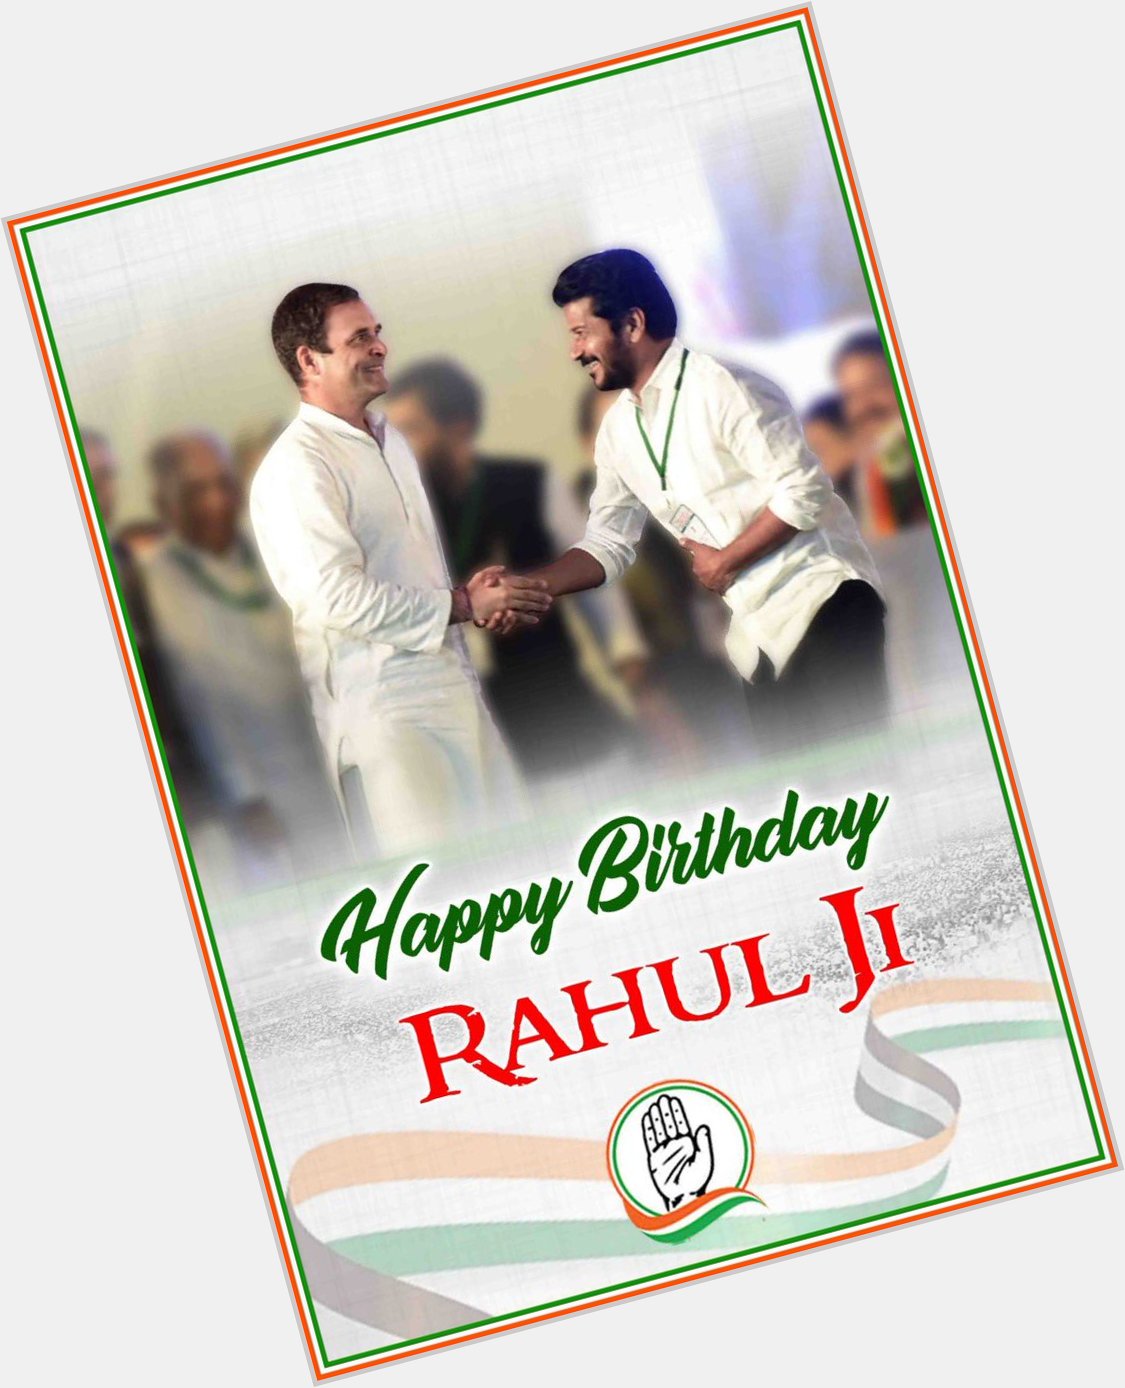 Wishing Rahul Gandhi ji a very happy birthday. 